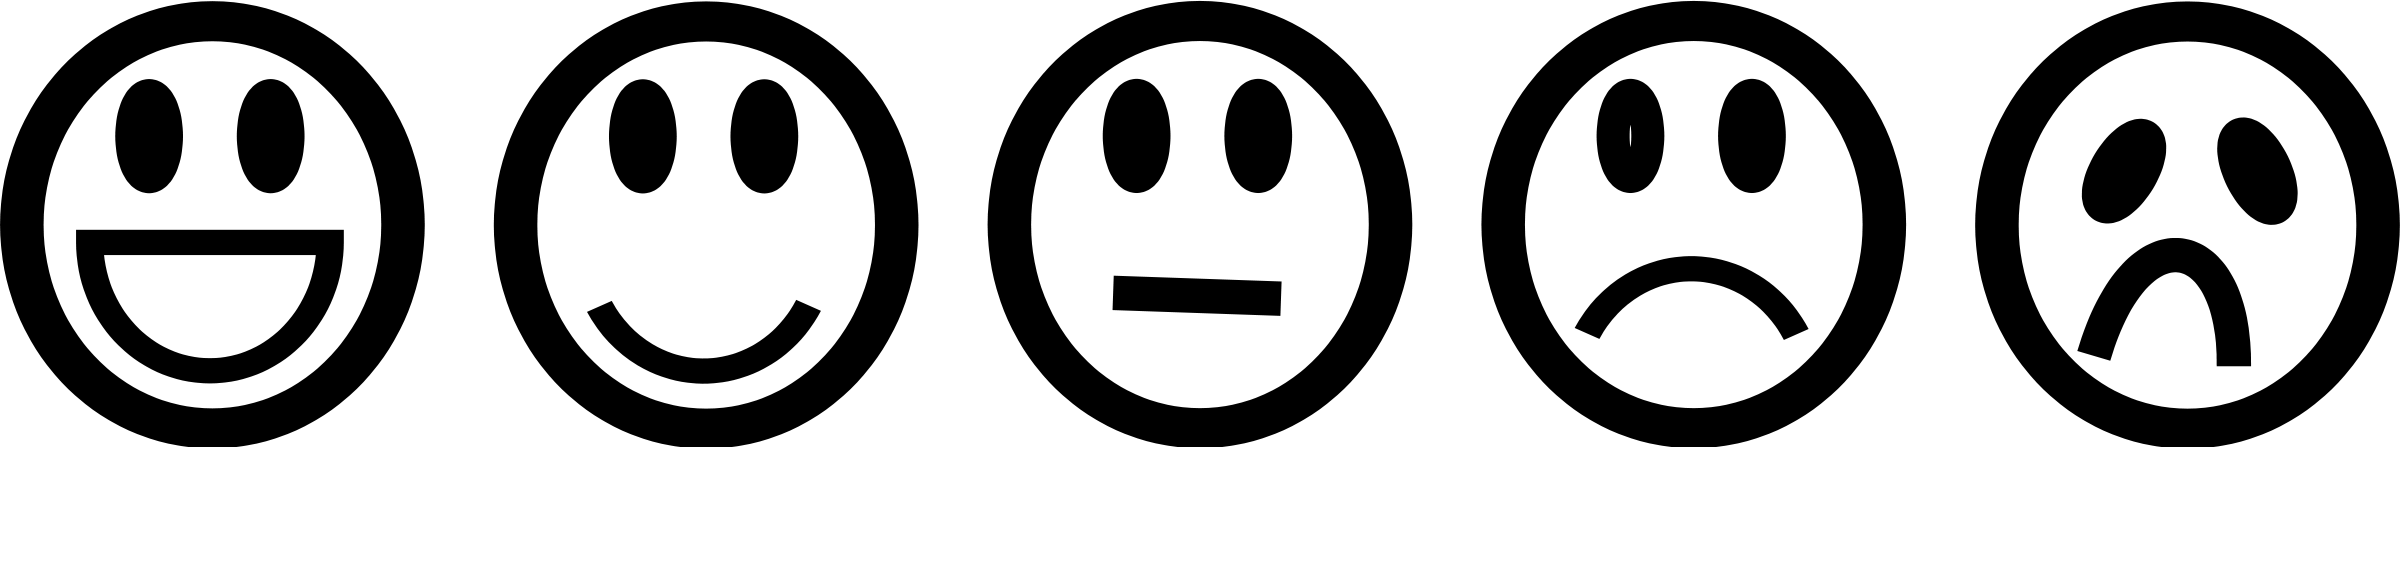 Emoji List Smile Sad Happy